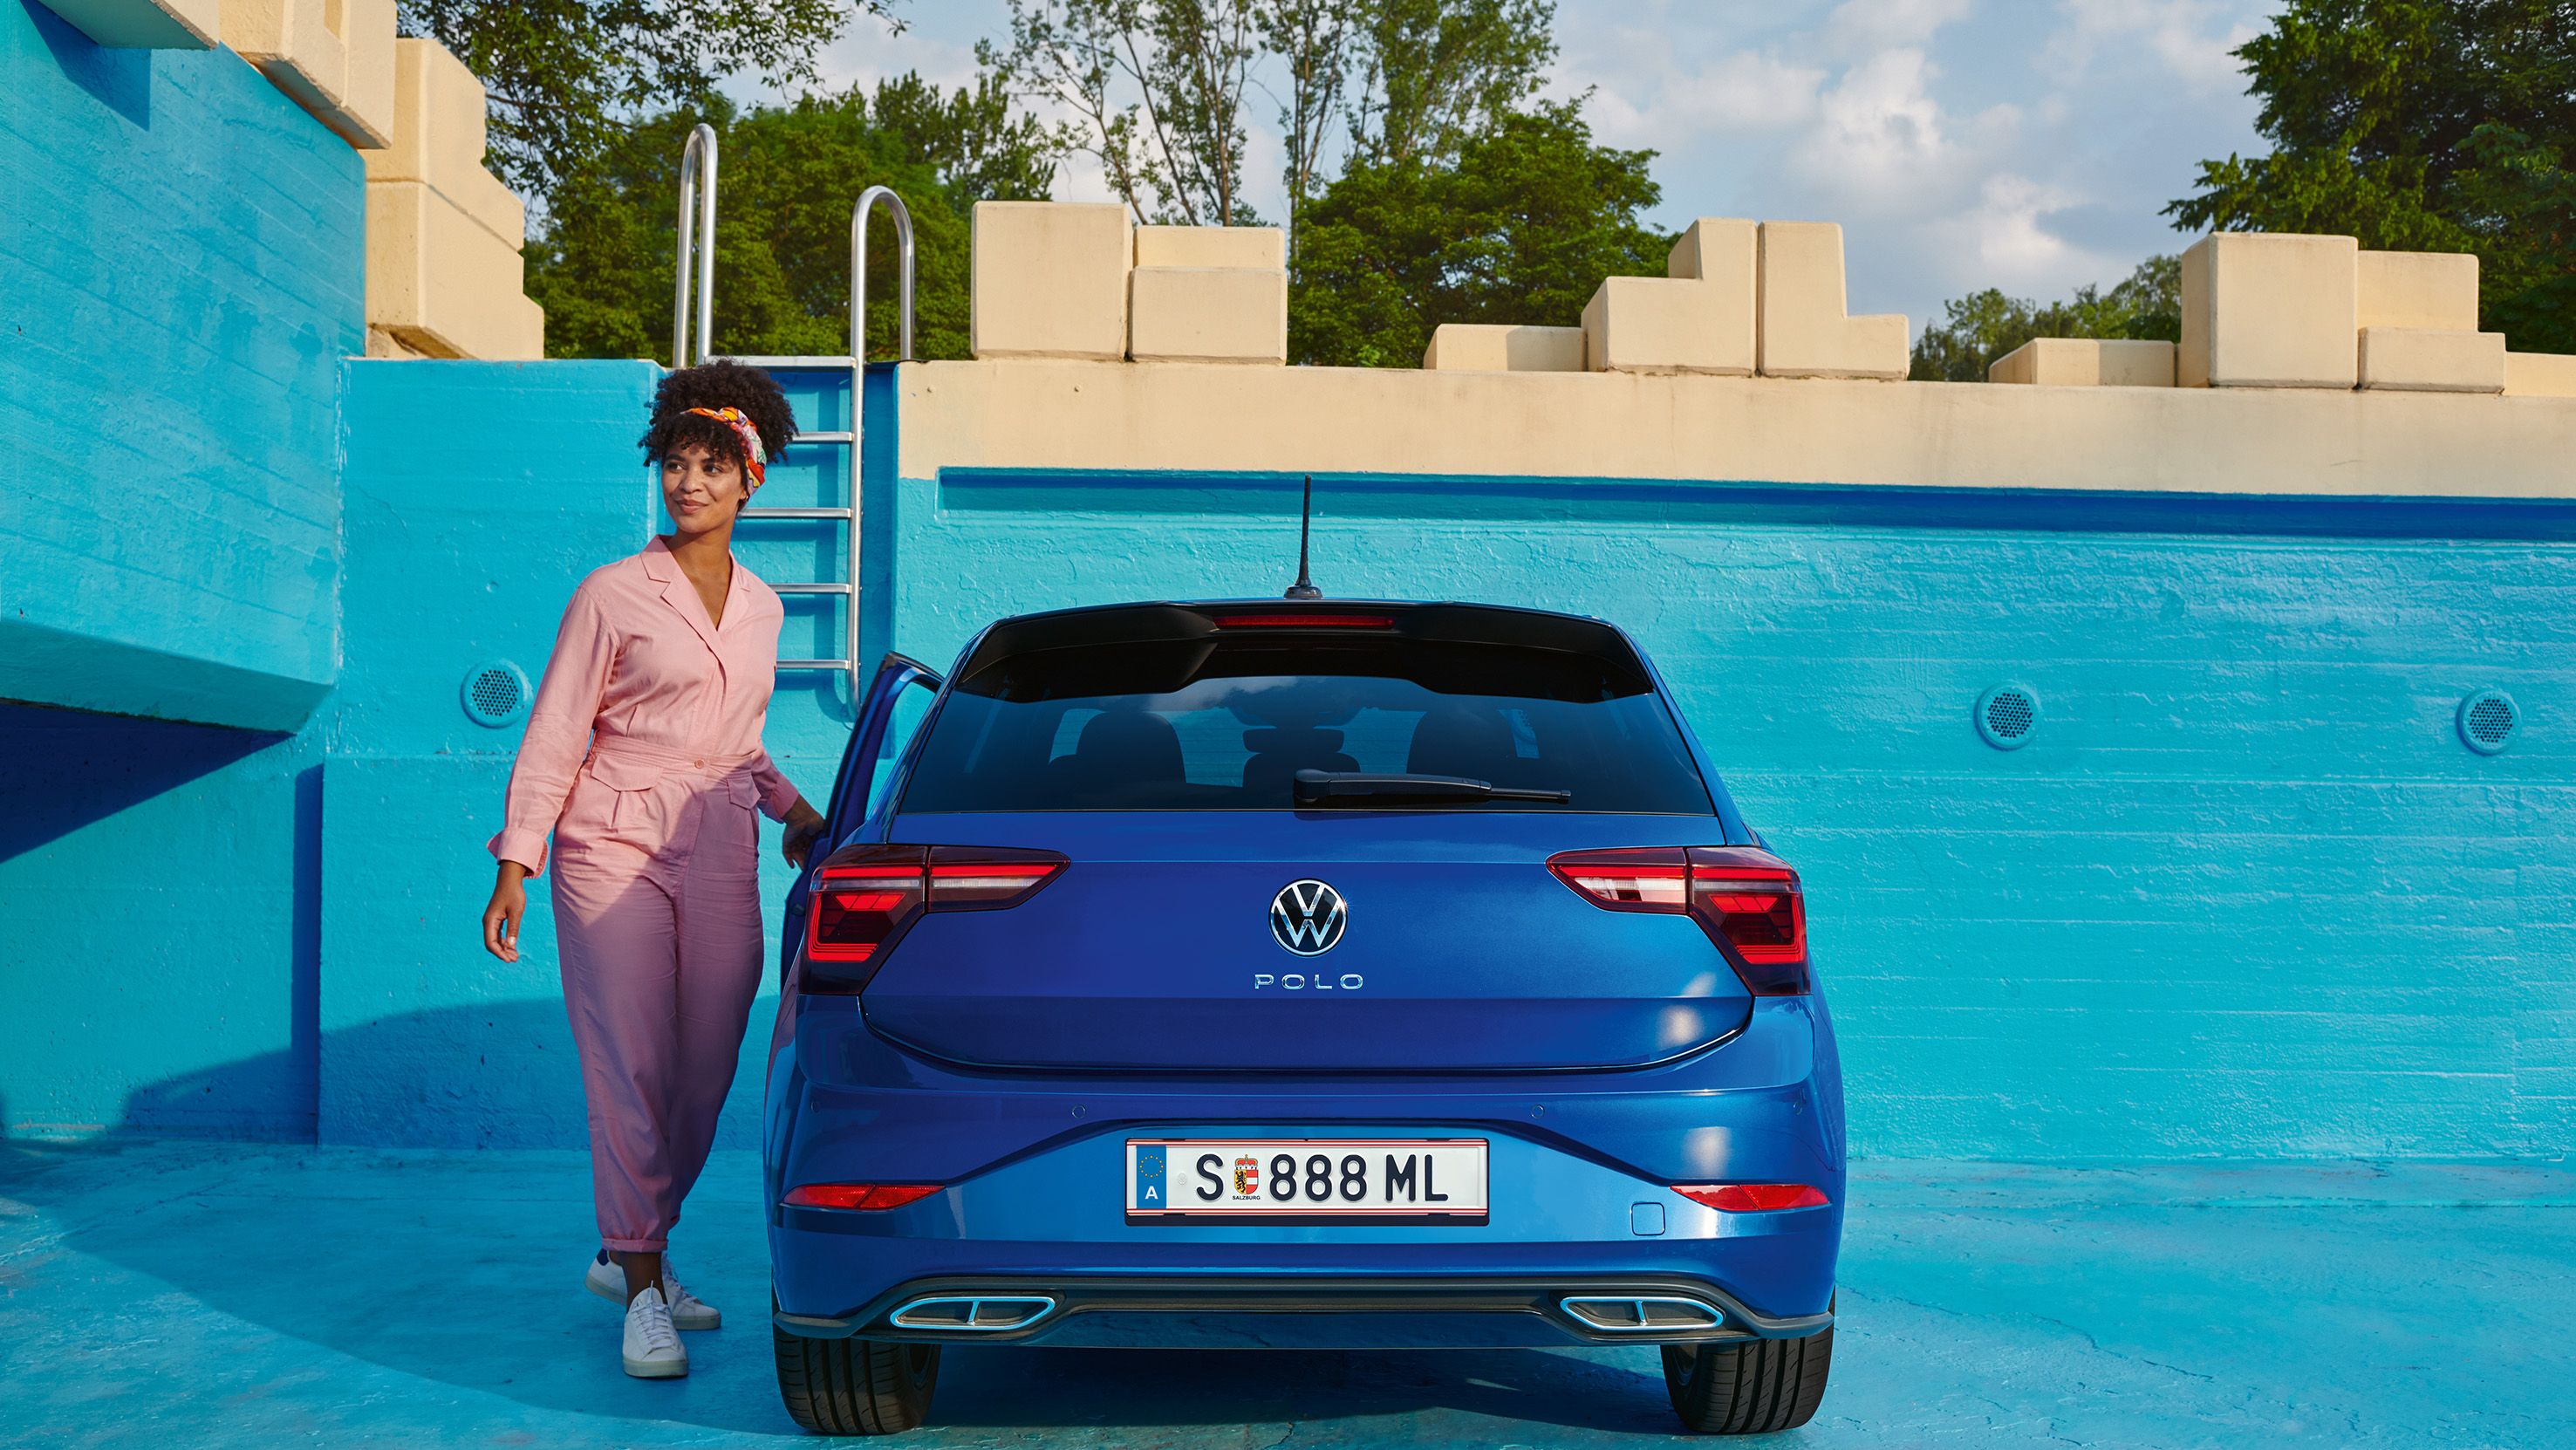 Blick auf das Heck eines blauen VW Polo, gepark tin einem leeren Pool. 